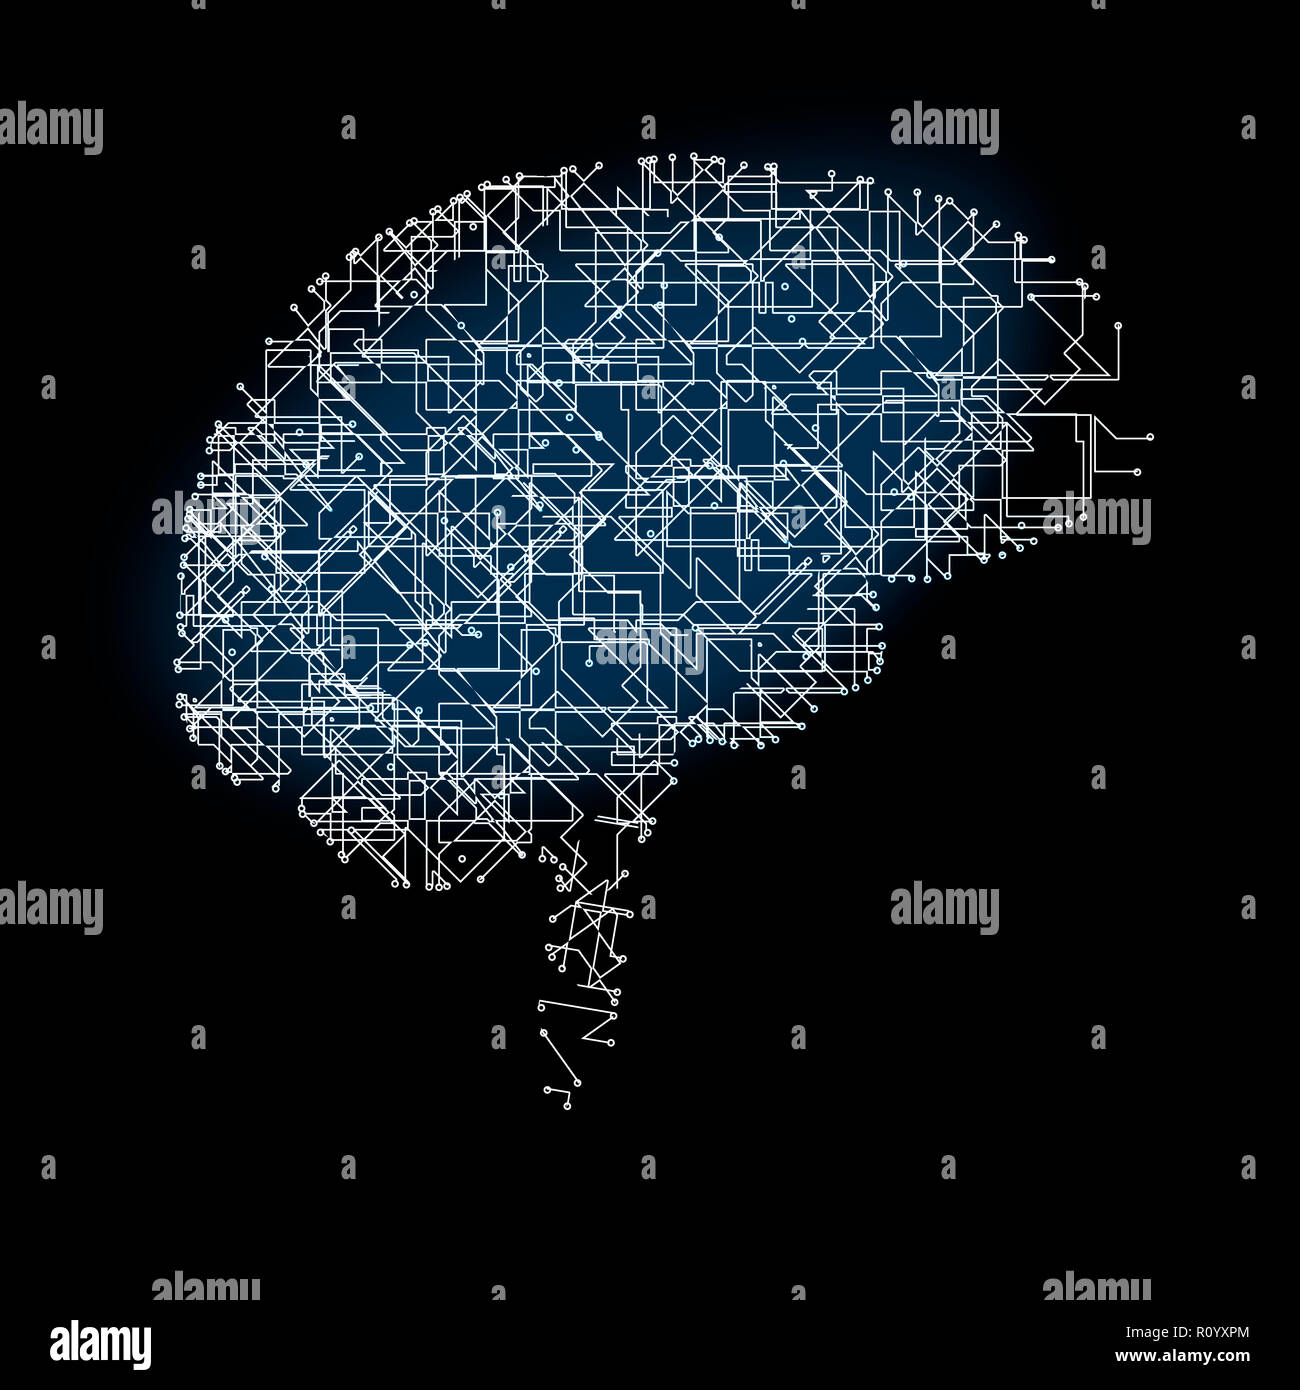 Immagine digitale del cervello umano anatomia delle reti artificiali su sfondo nero Foto Stock